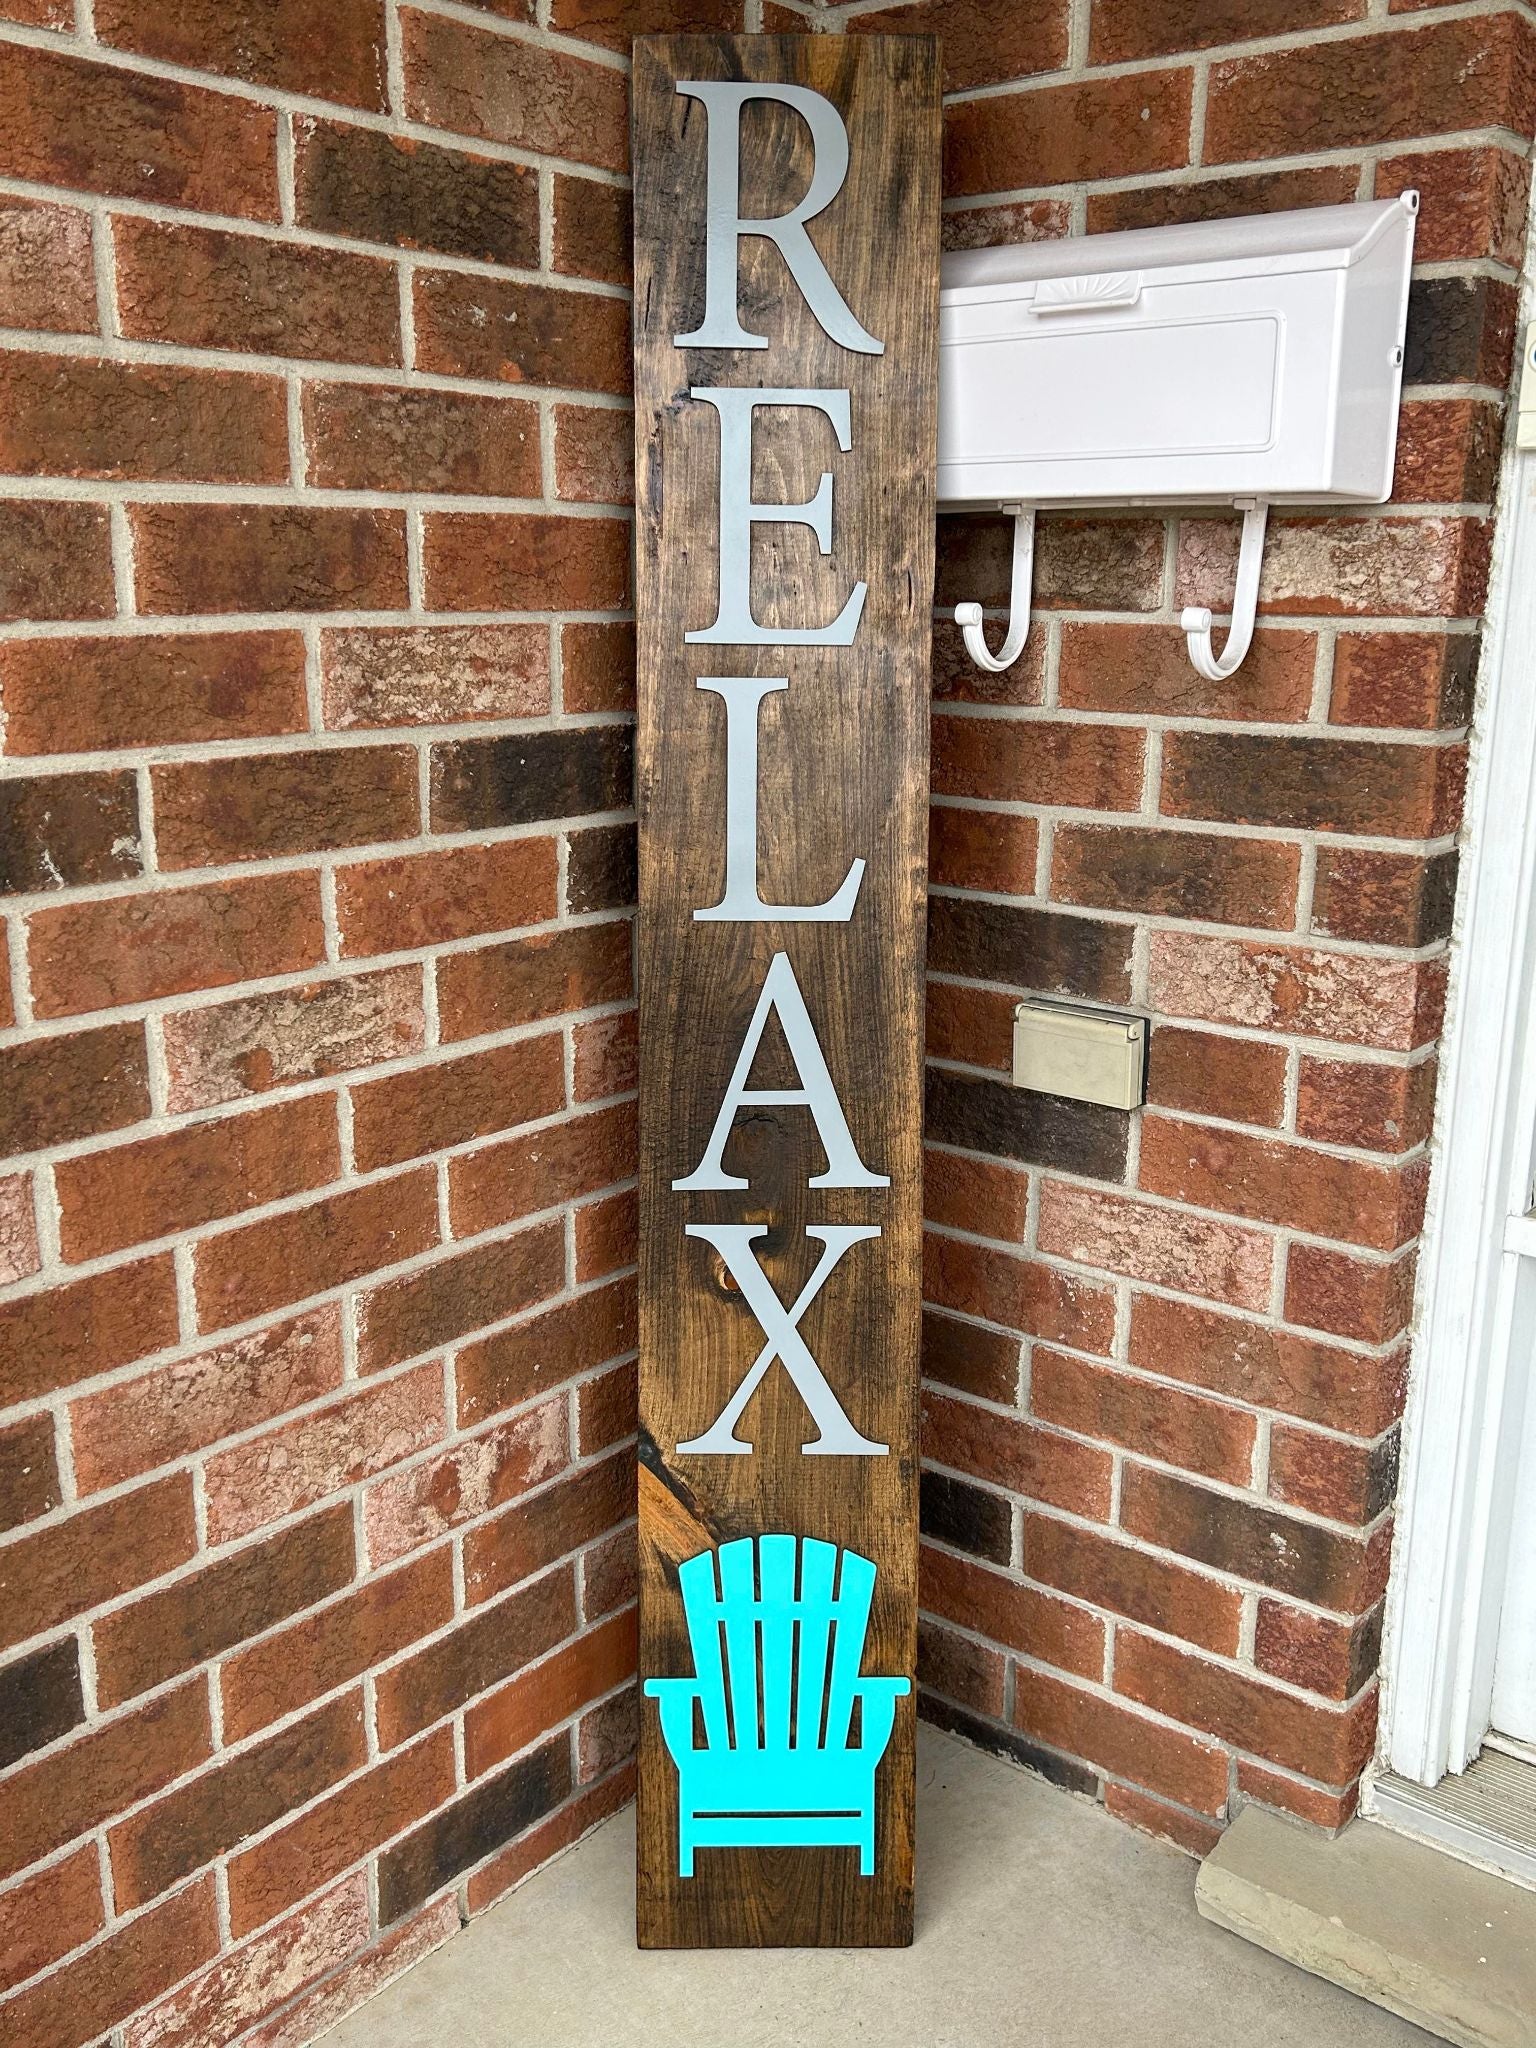 034-015 - 5ft x 9" RELAX Pine Porch Sign - 3D - 1